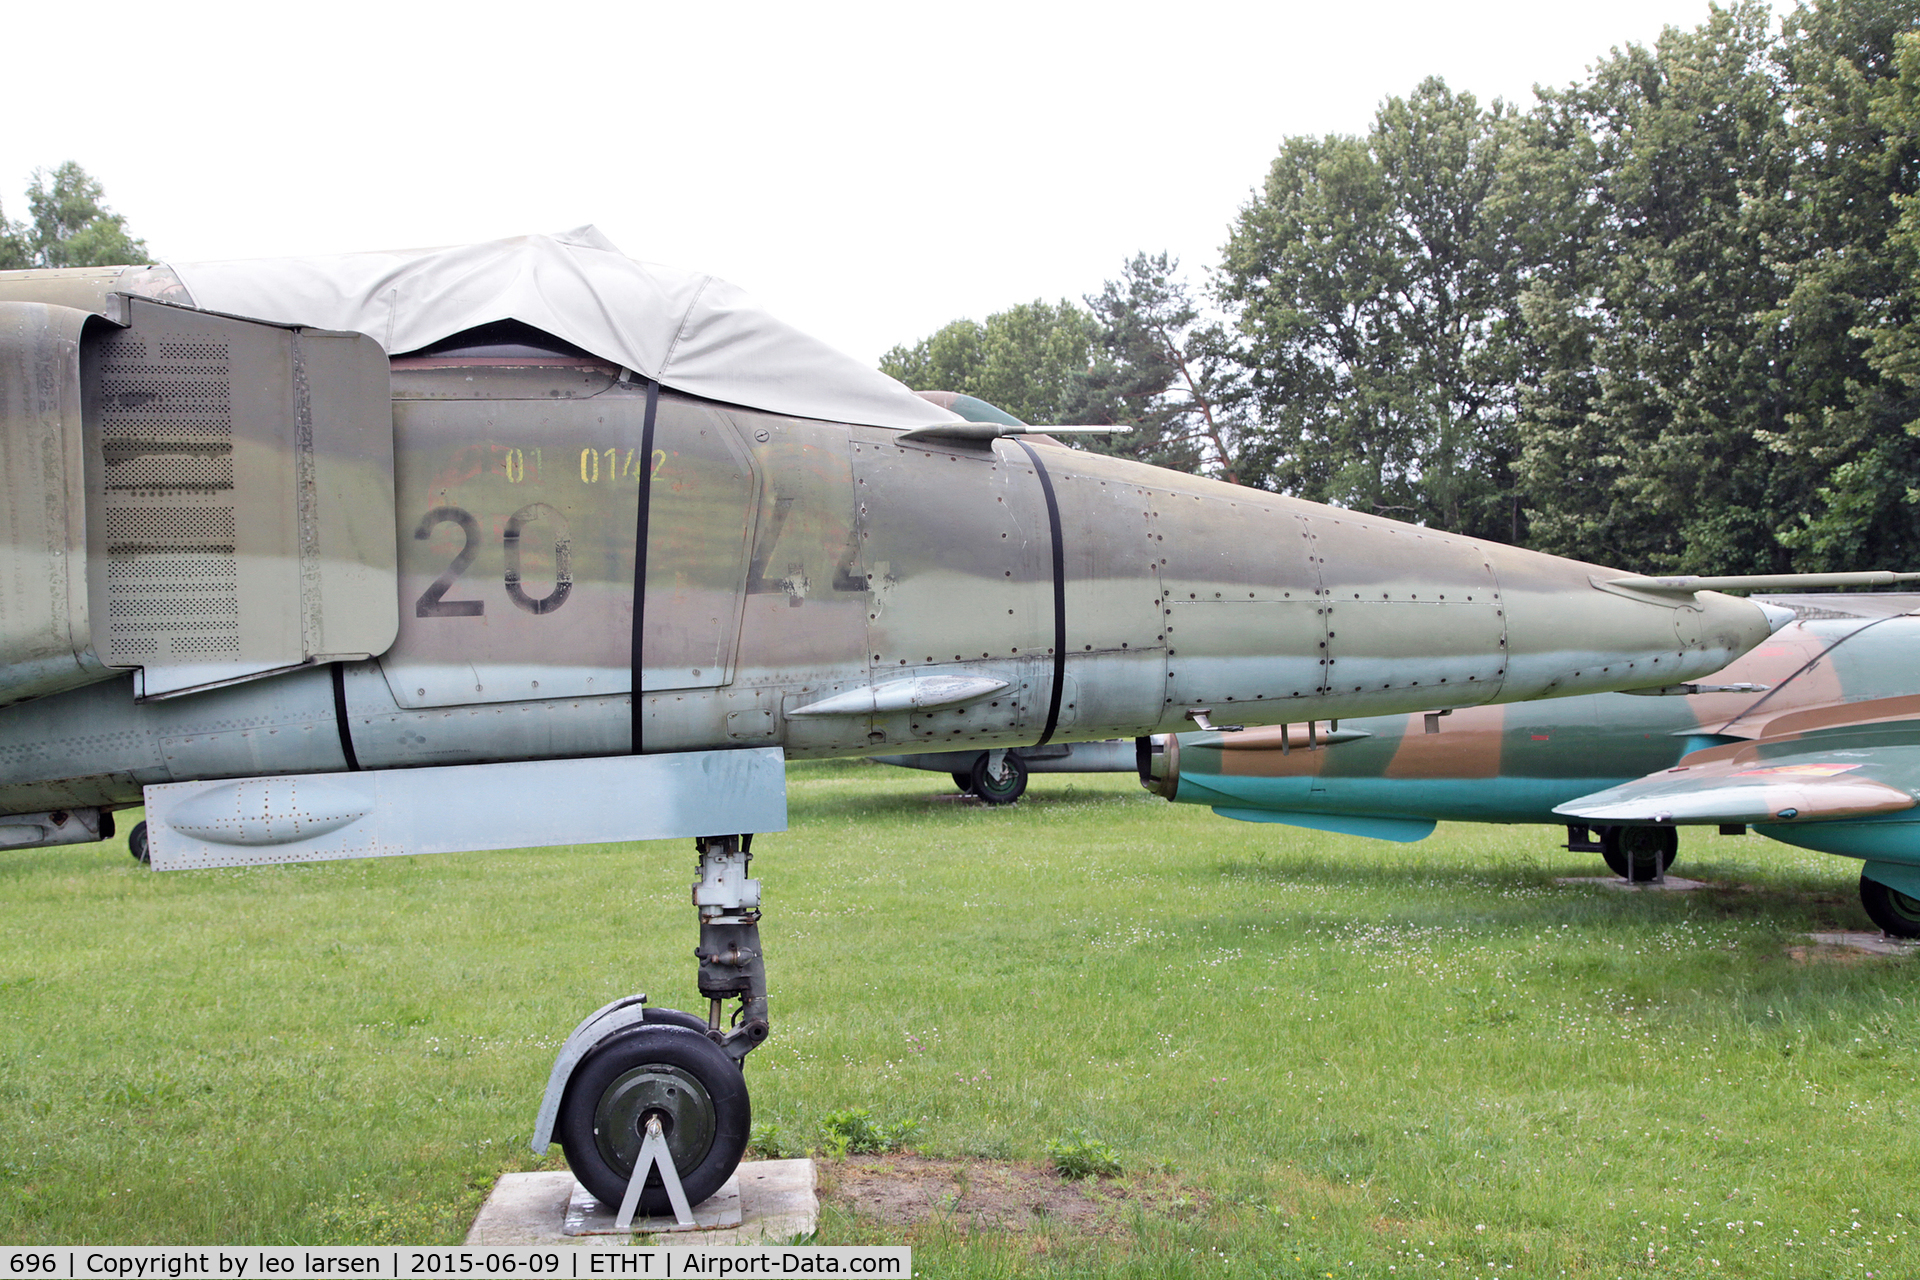 696, 1980 Mikoyan-Gurevich MiG-23BN C/N 0393214212, Flugplatzmuseum Cottbus 9.6.15

696 with 20 44 on rh side